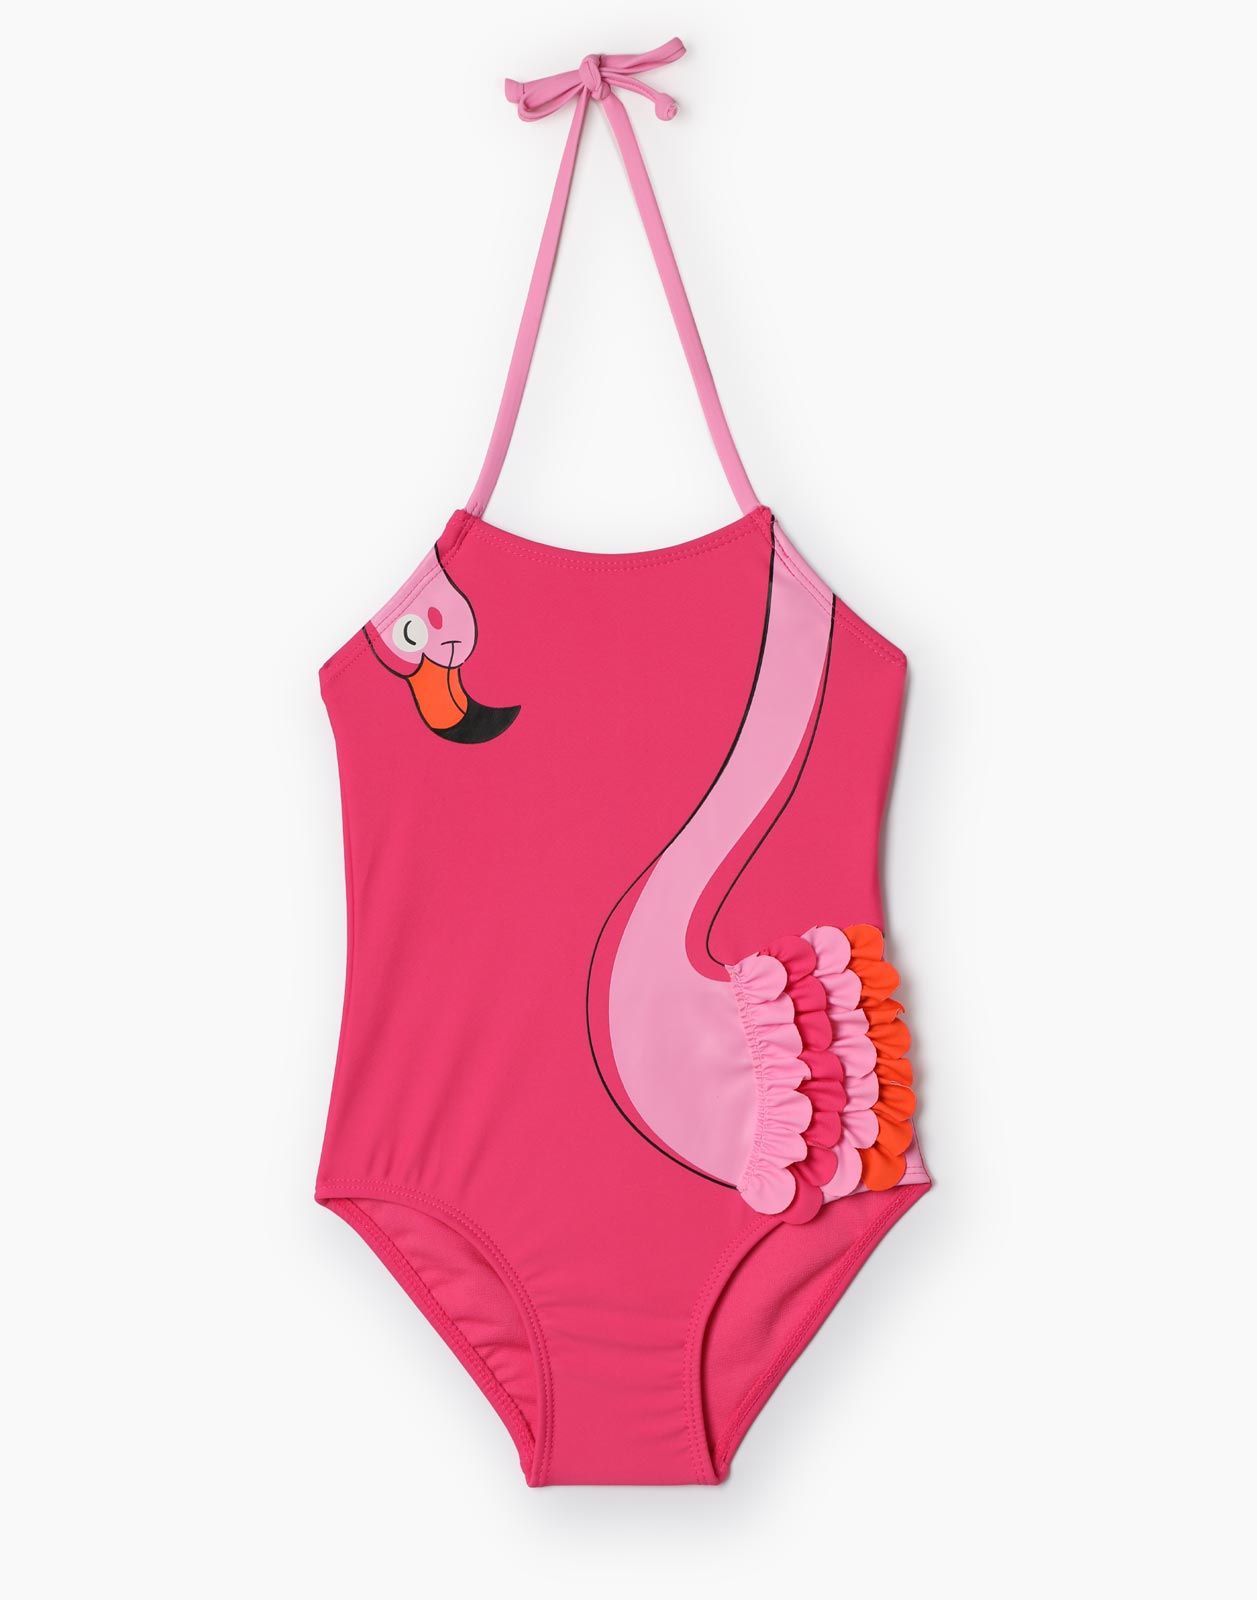 Слитный купальник для девочки Gloria Jeans GSM001771 розовый 4-6л/116